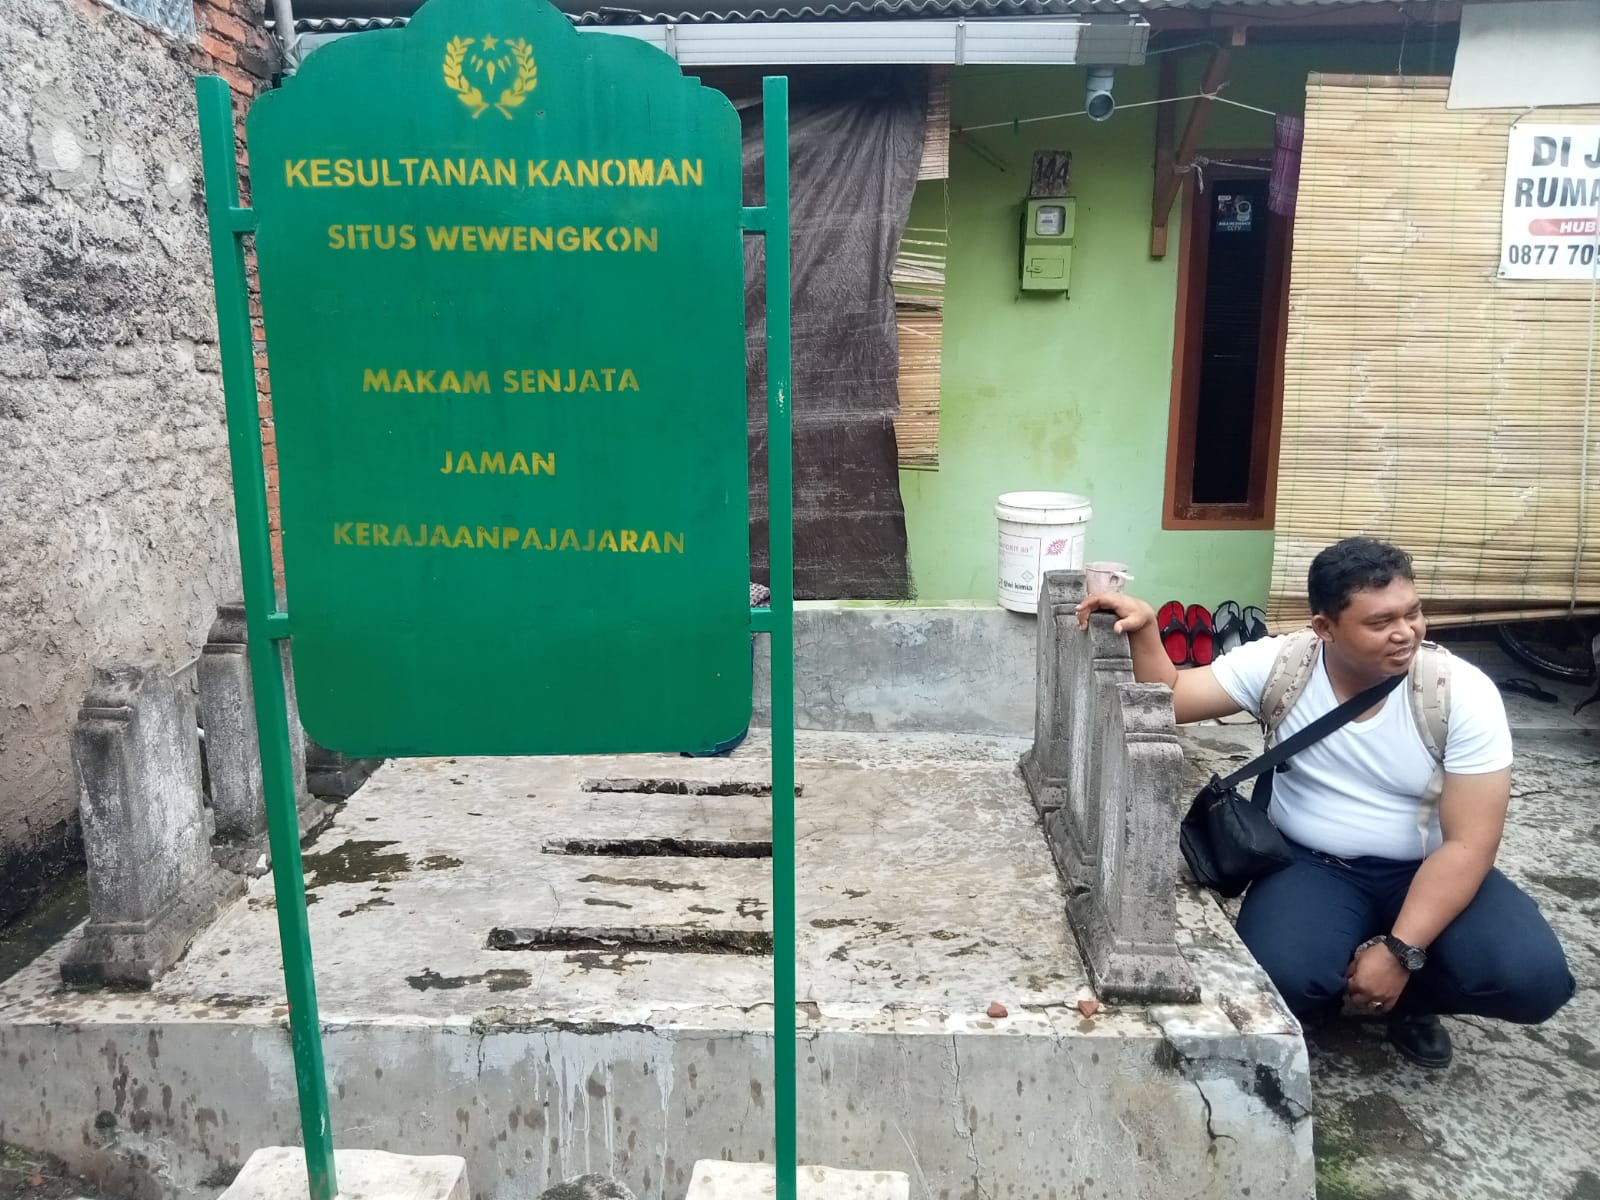 Peninggalan Kerajaan Pajajaran di Cirebon, Makam sampai Kuburan Senjata di Kesenden